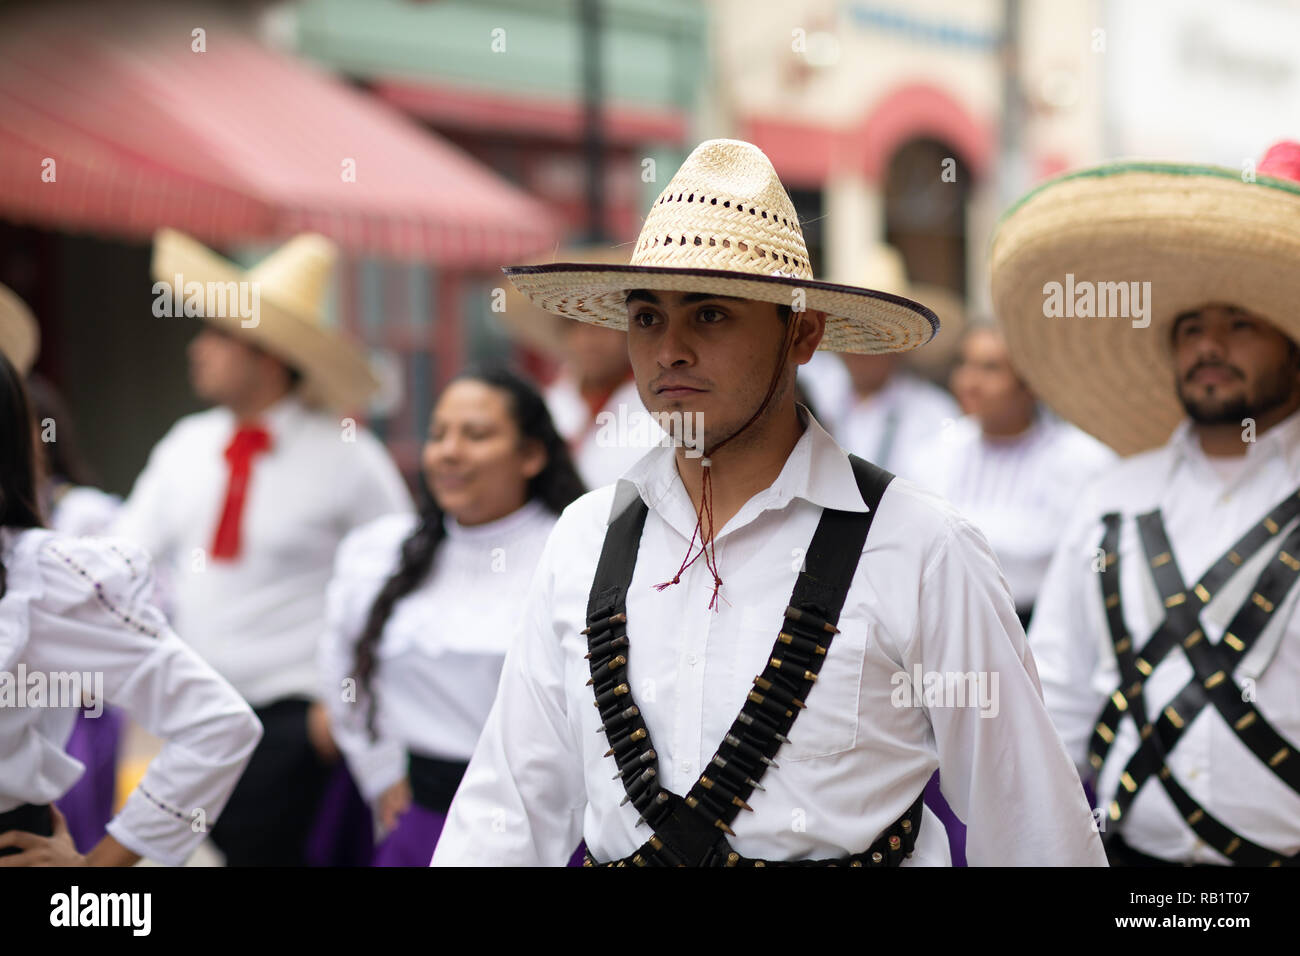 Matamoros, Tamaulipas, Mexique - 20 novembre 2018 : le défilé du 20 novembre, les jeunes hommes portant des vêtements avec des sombreros mexicains traditionnels à la parade Banque D'Images